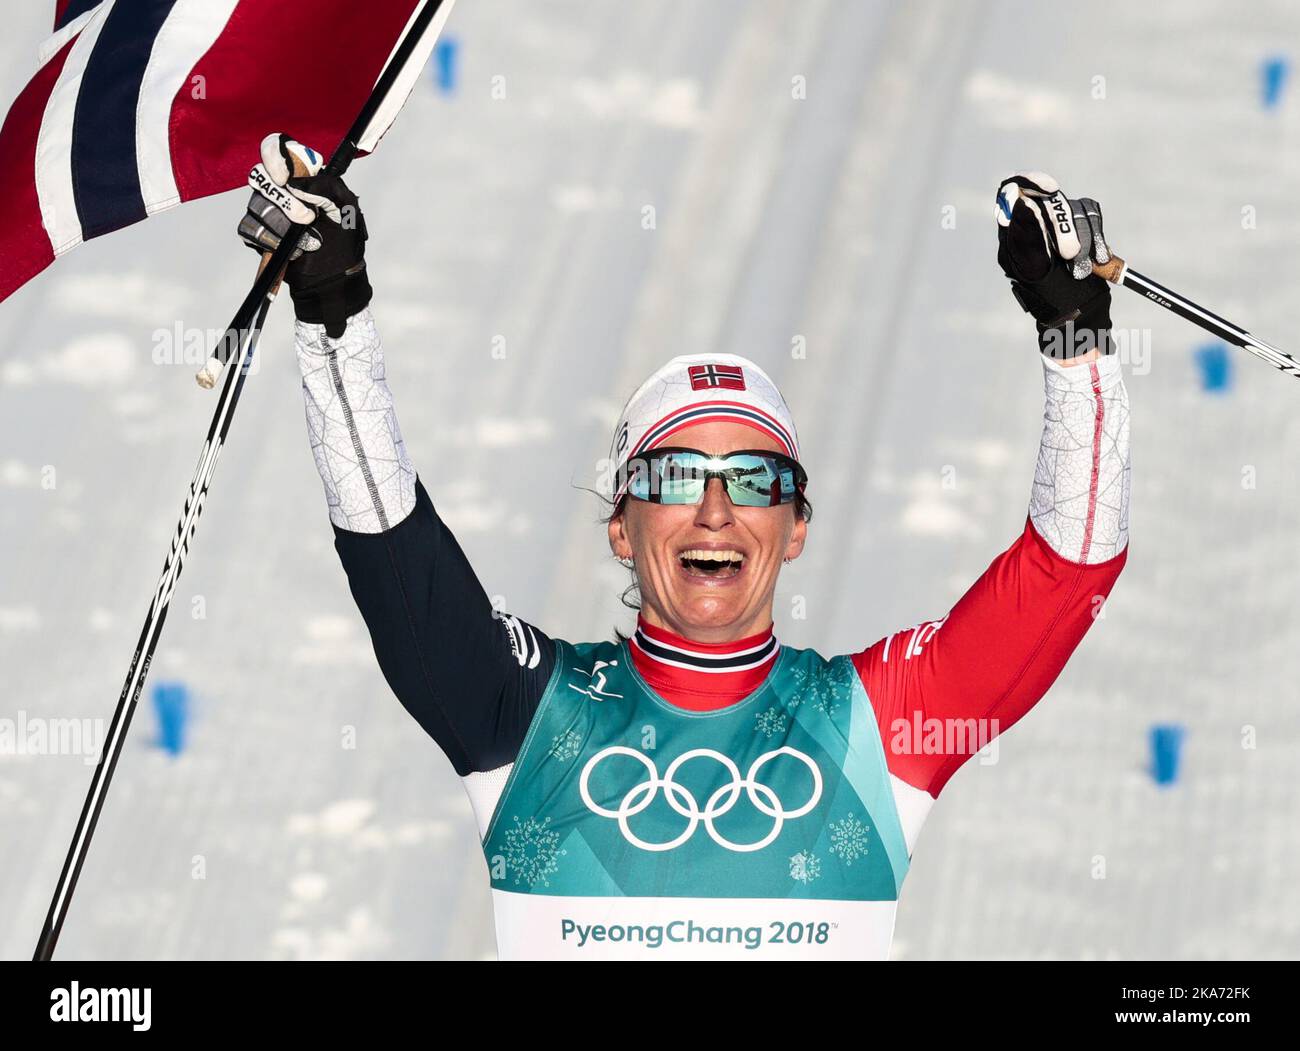 Marit Bjoergen, de Norvège, célèbre après avoir remporté la médaille d'or de la compétition féminine de ski de fond 30k aux Jeux olympiques d'hiver de 2018 à Pyeongchang, en Corée du Sud, le dimanche 25 février 2018. Photo: Lise Aaserud / NTB scanpi Banque D'Images